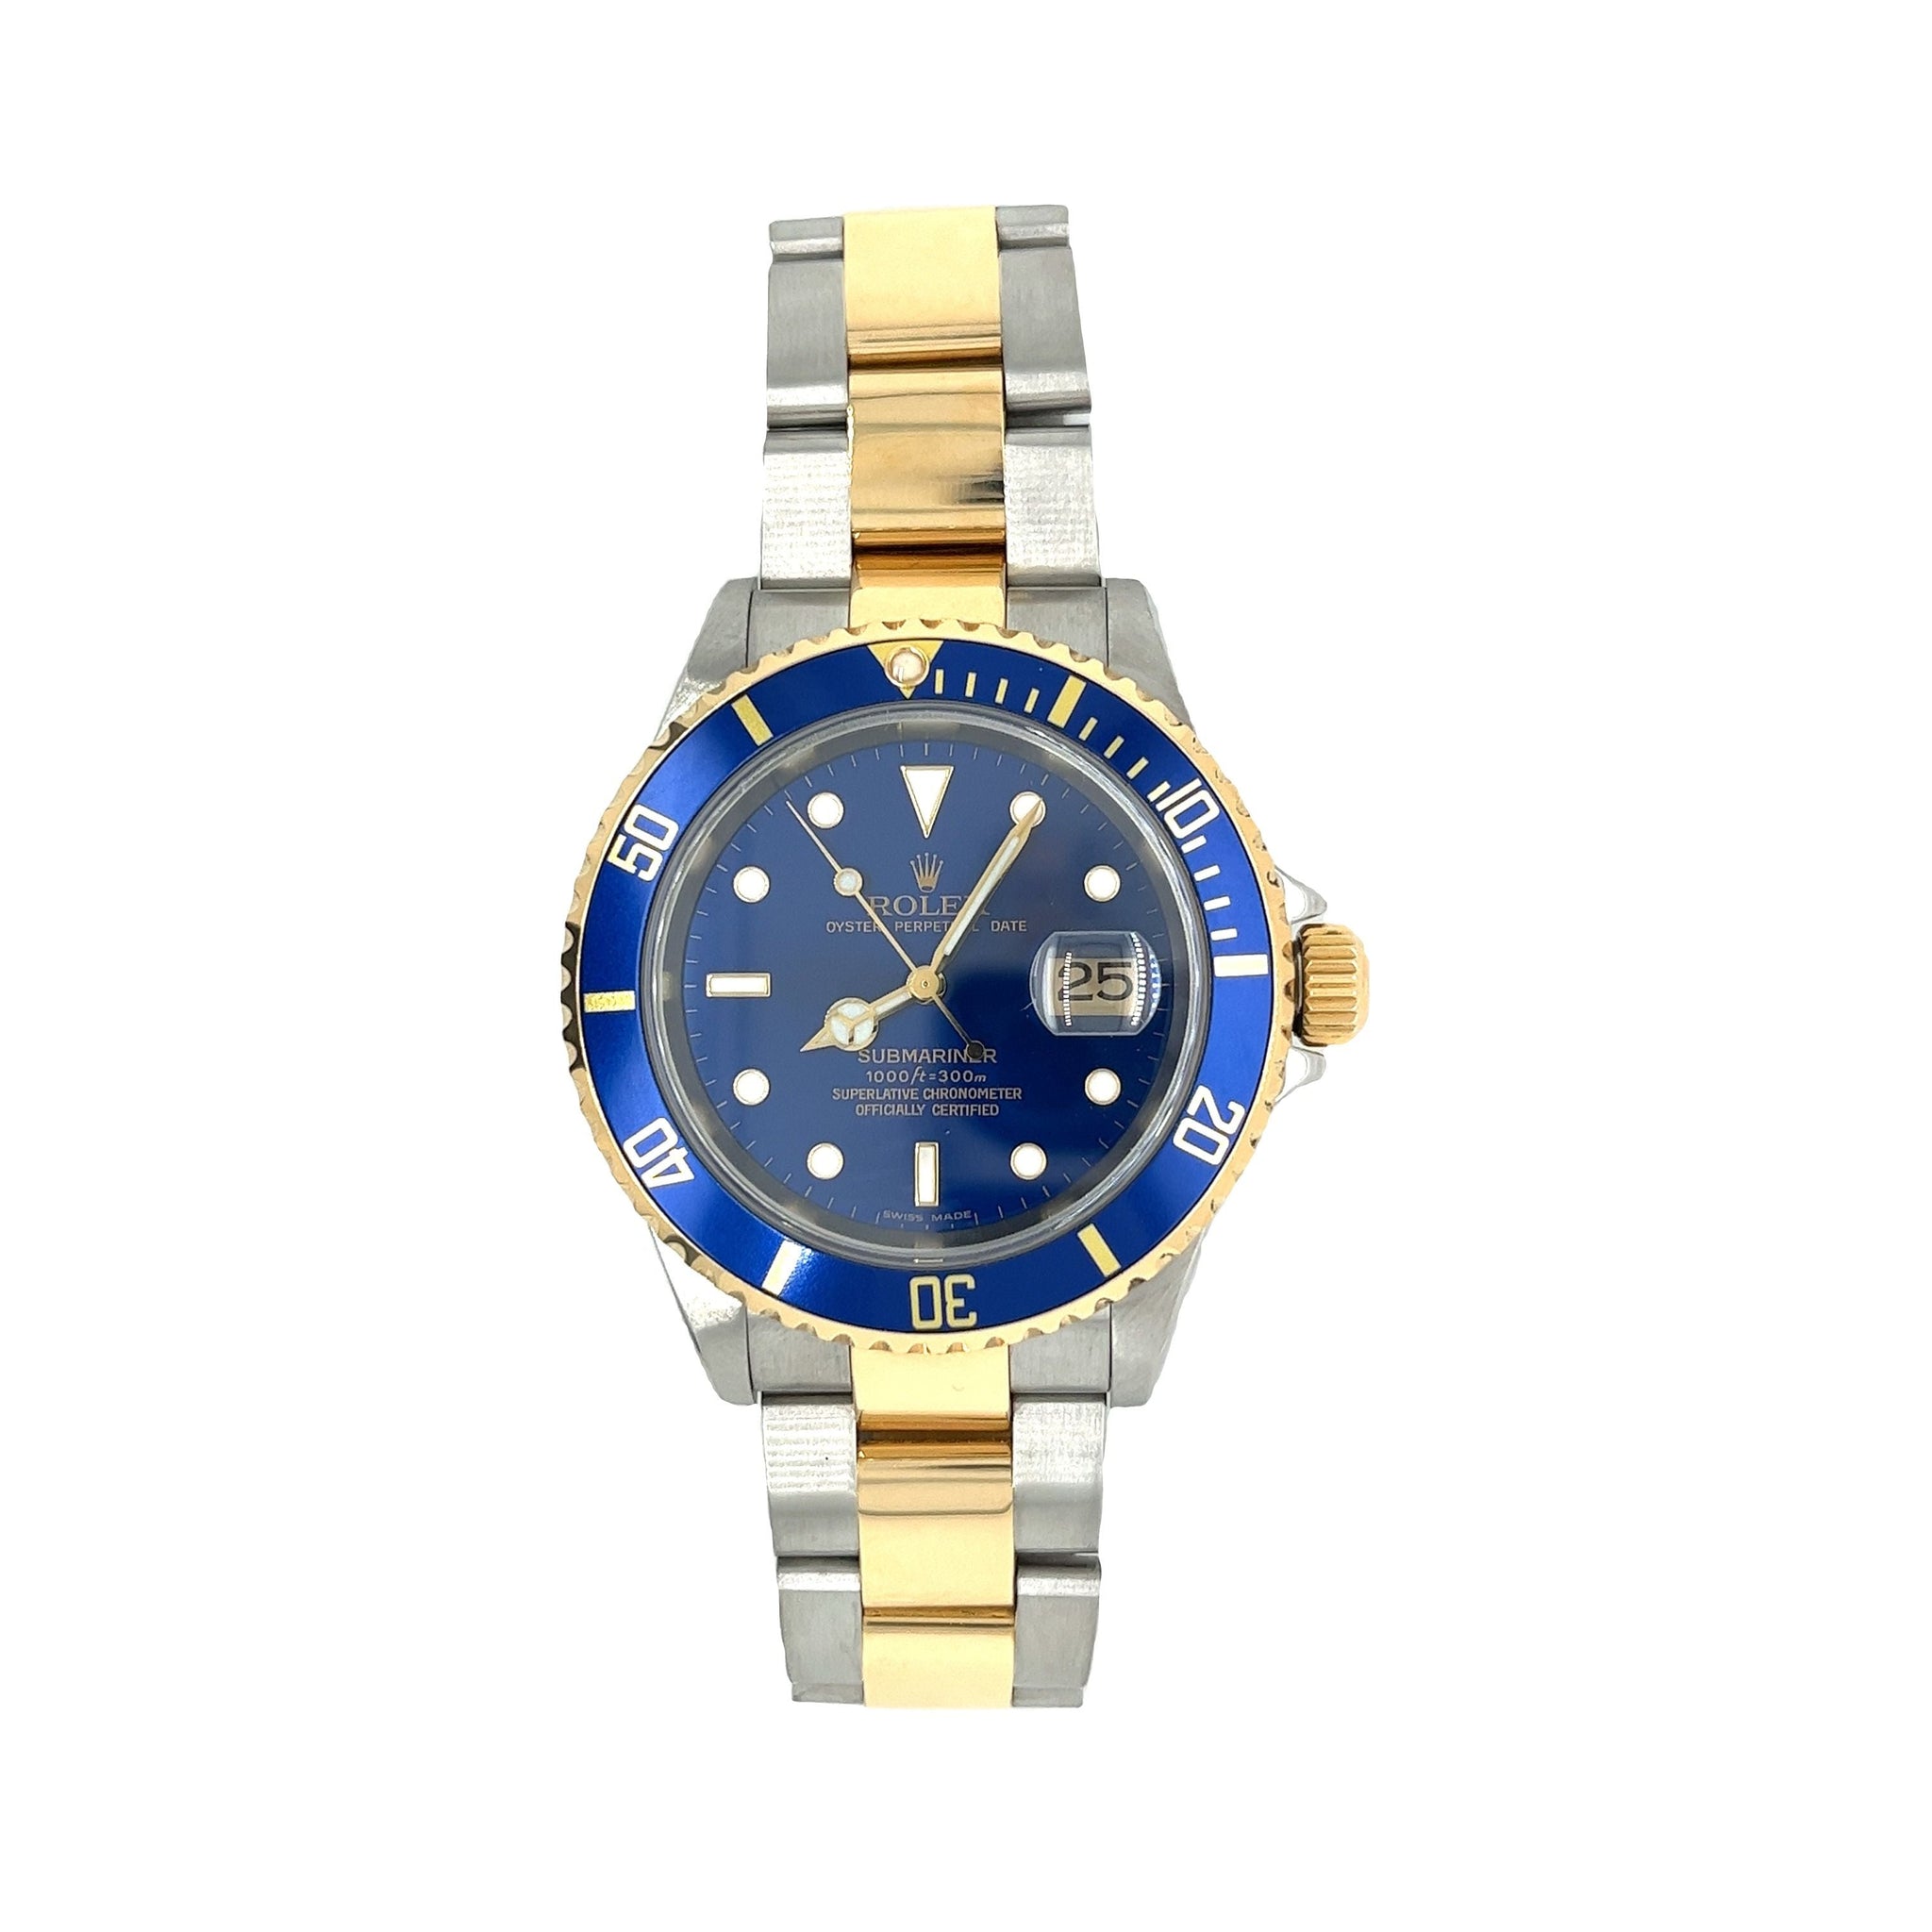 Rolex Submariner Date Stainless Watch